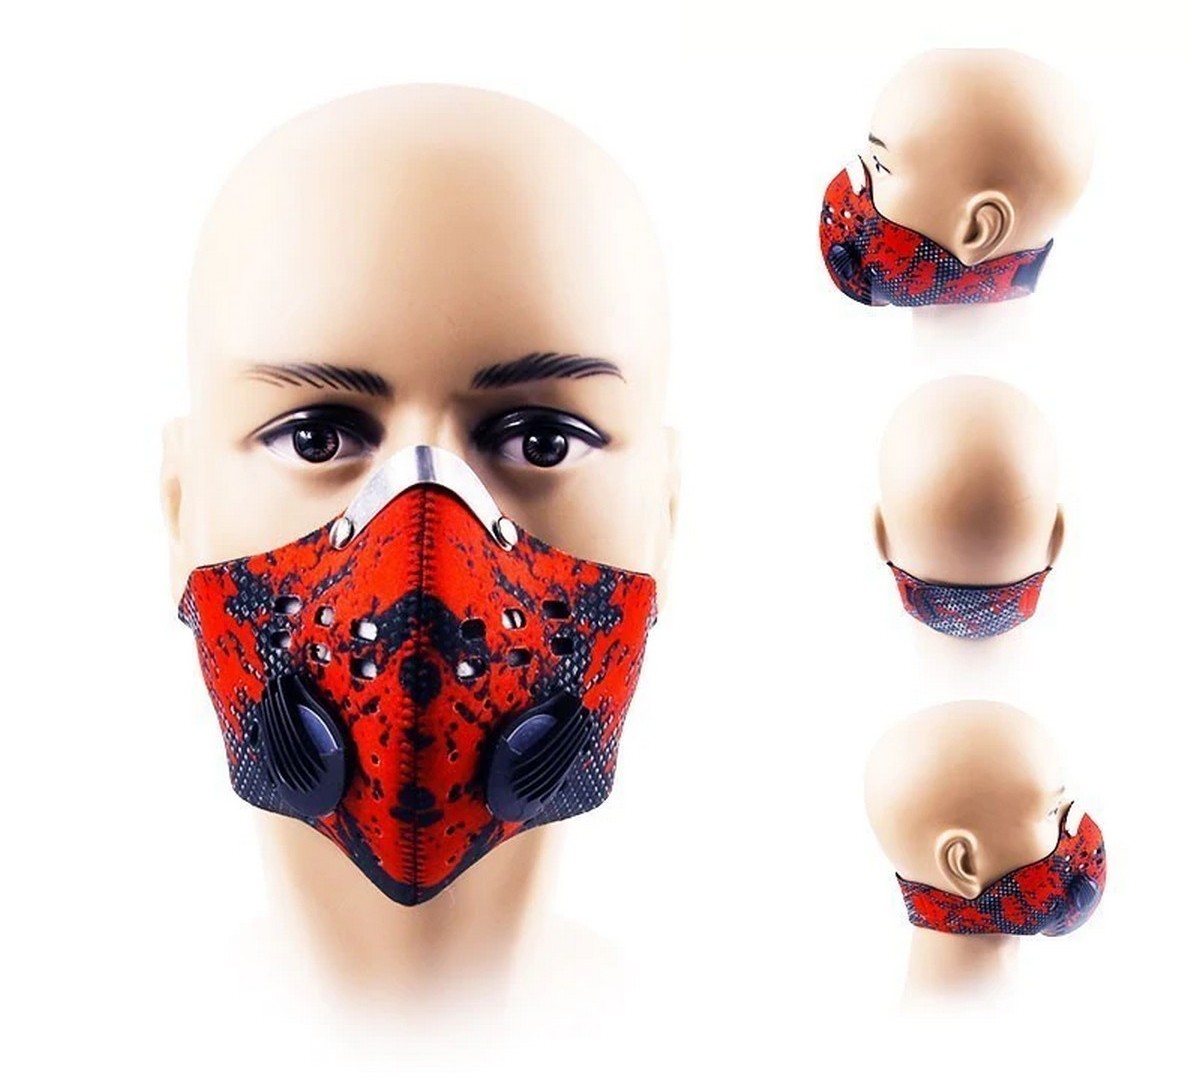 Masker wajah dari neoprene